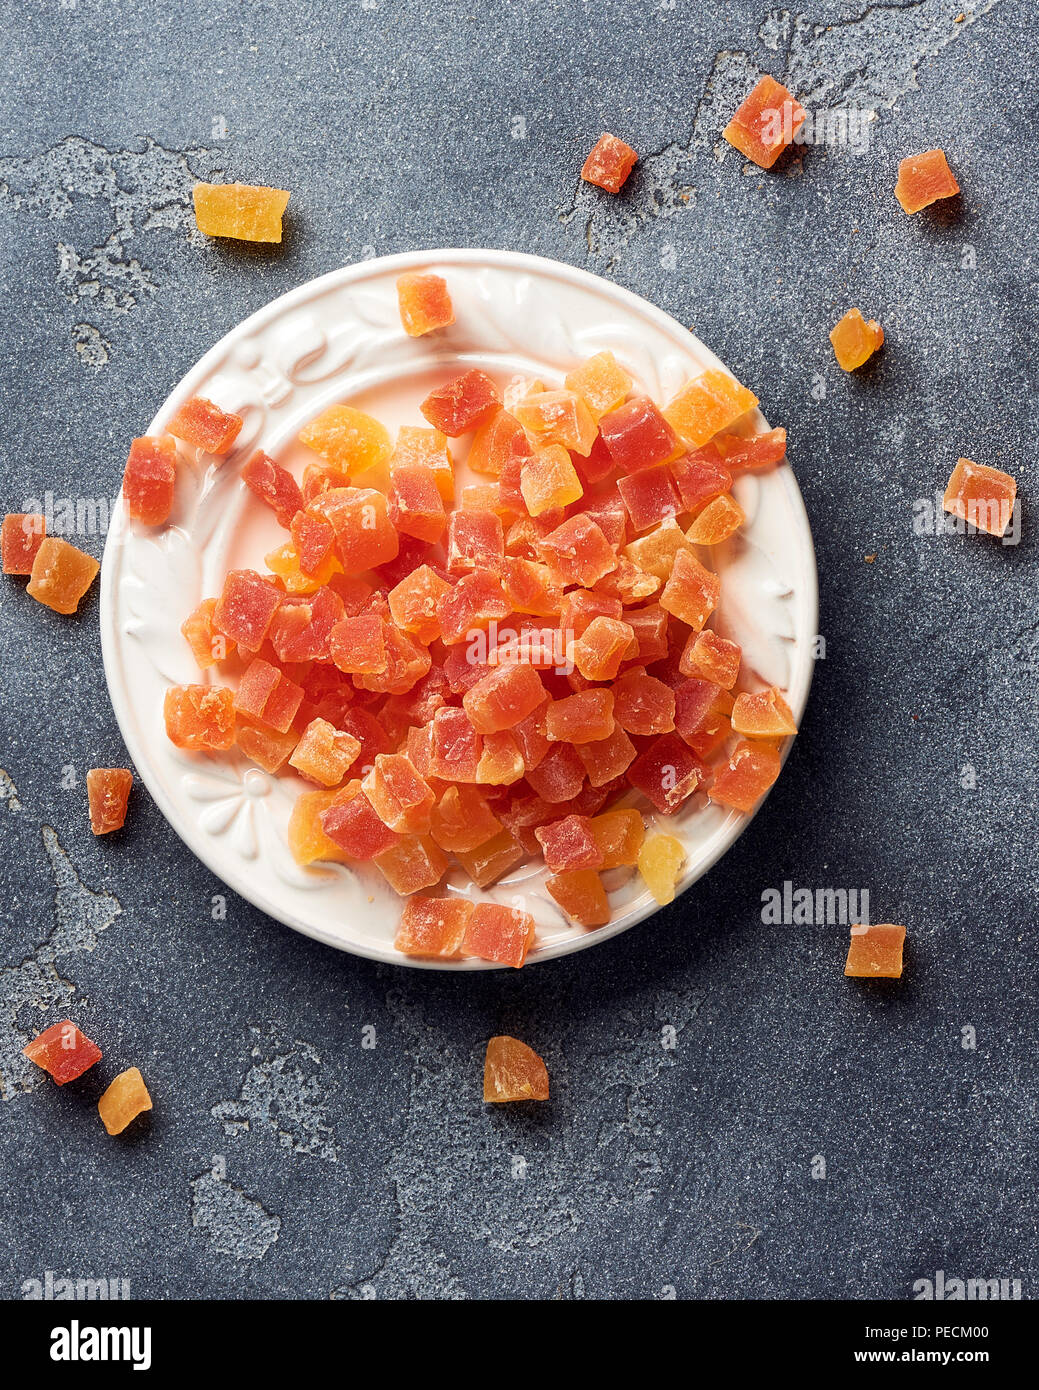 Würfel von getrockneten Aprikosen, Mangos und Papayas auf weiß palte. Kandierte Früchte über grauen Hintergrund. Stockfoto